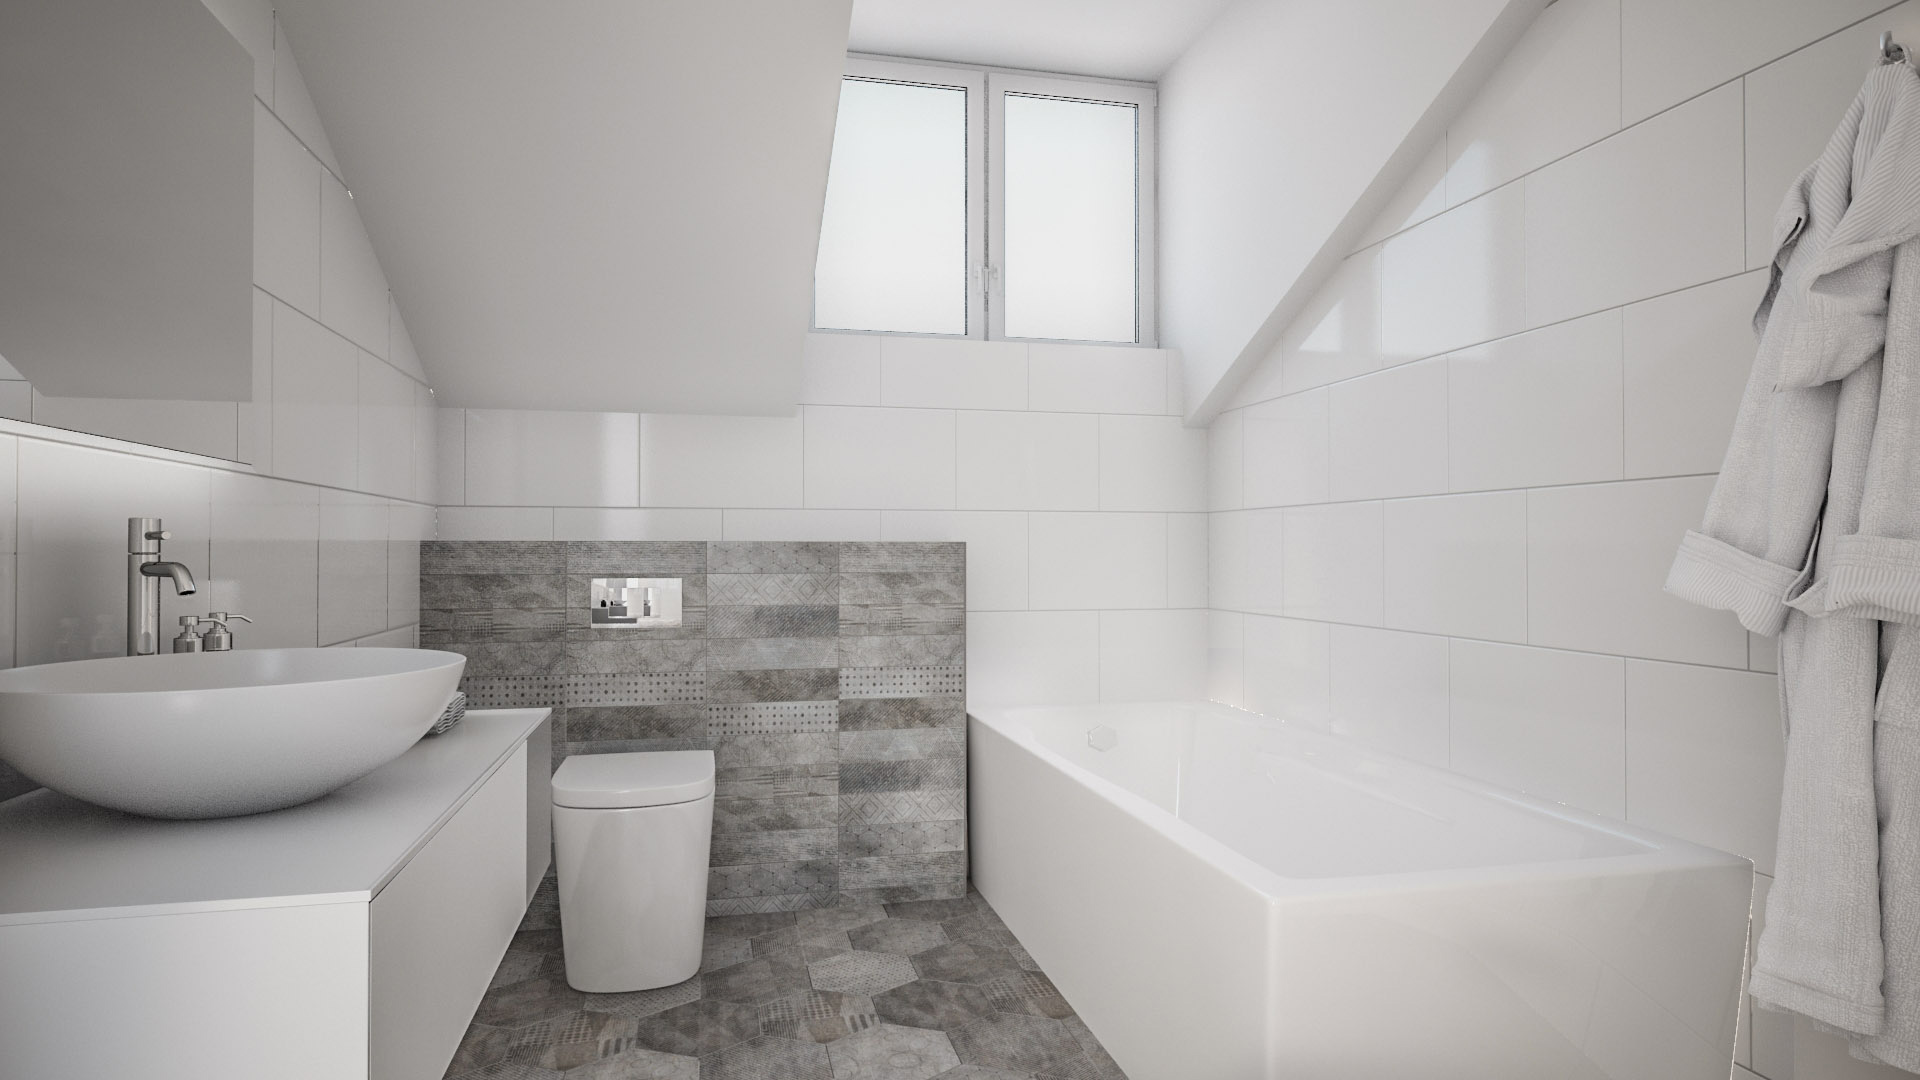 C3 Concept, visualisation 3D à Bulle. cressier villa 2 appartements intérieur